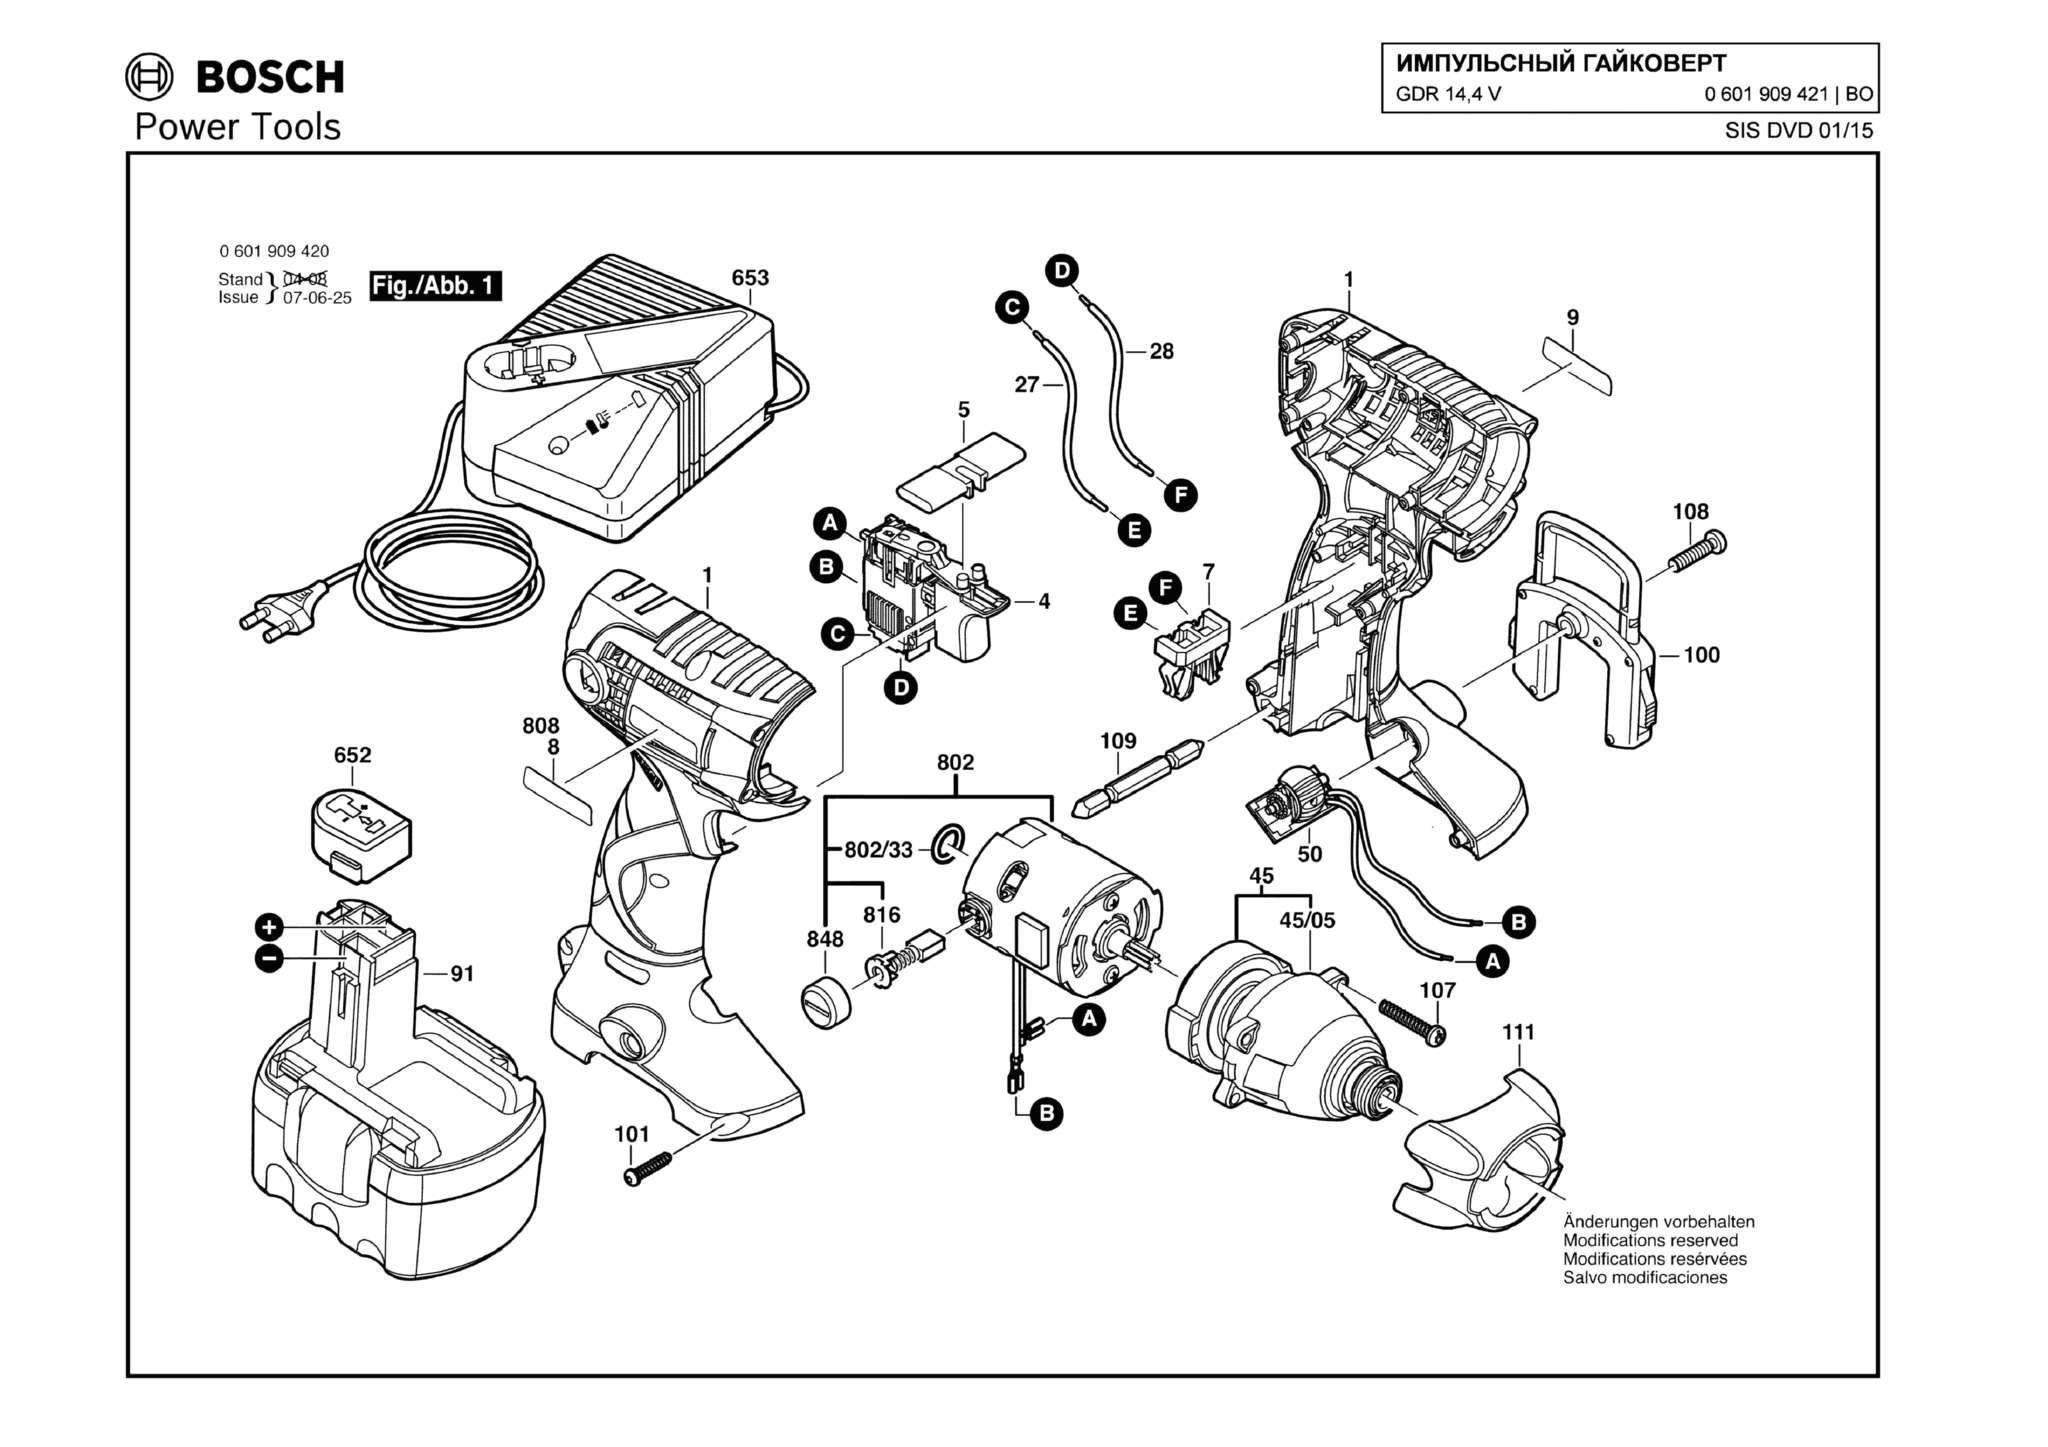 Запчасти, схема и деталировка Bosch GDR 14,4 V (ТИП 0601909421)